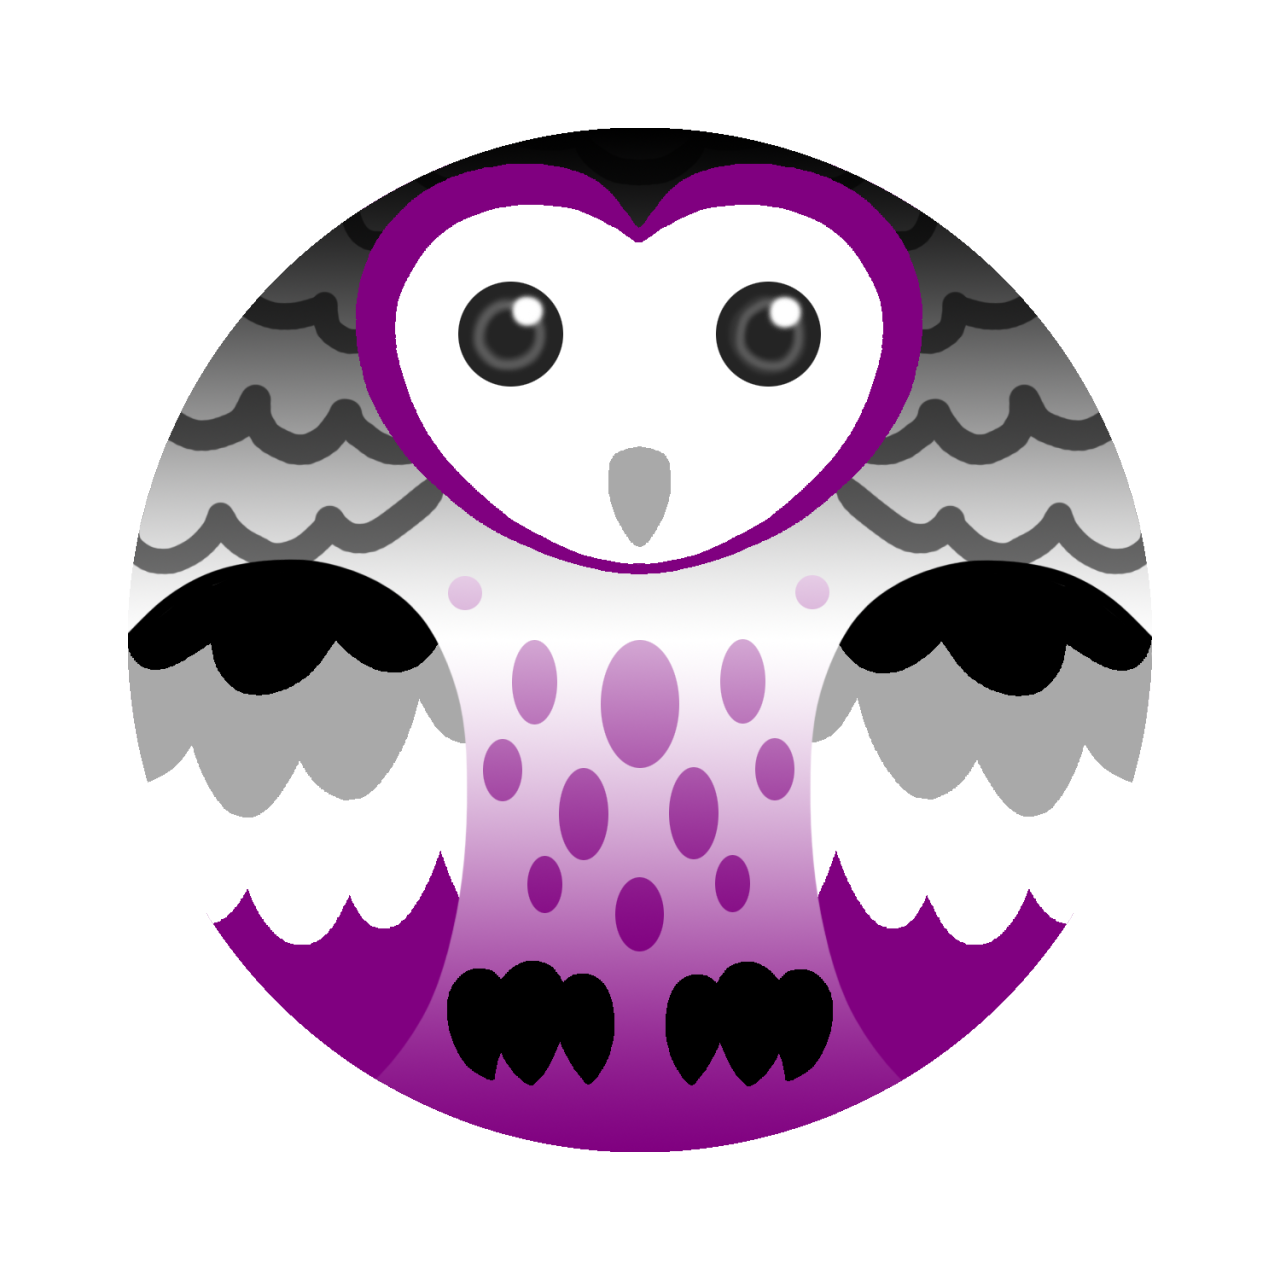 egg clipart owl